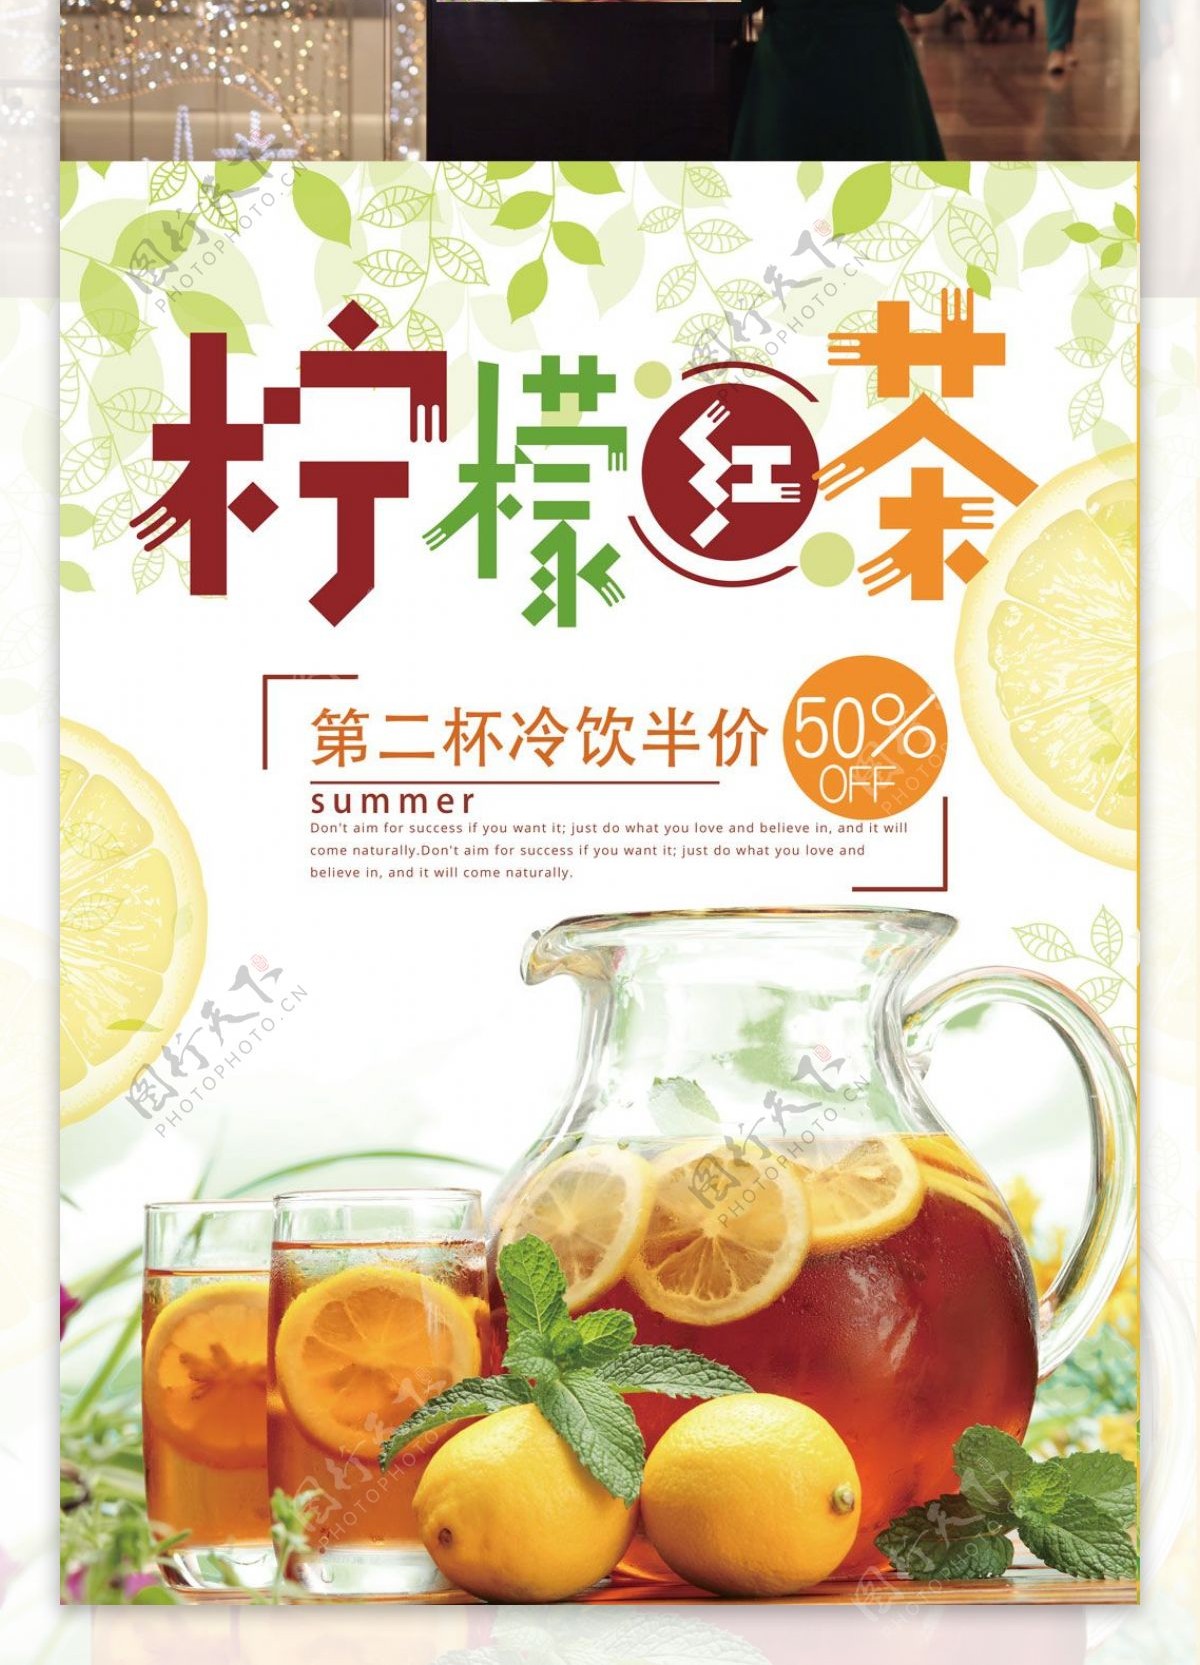 柠檬红茶清新饮品促销宣传海报